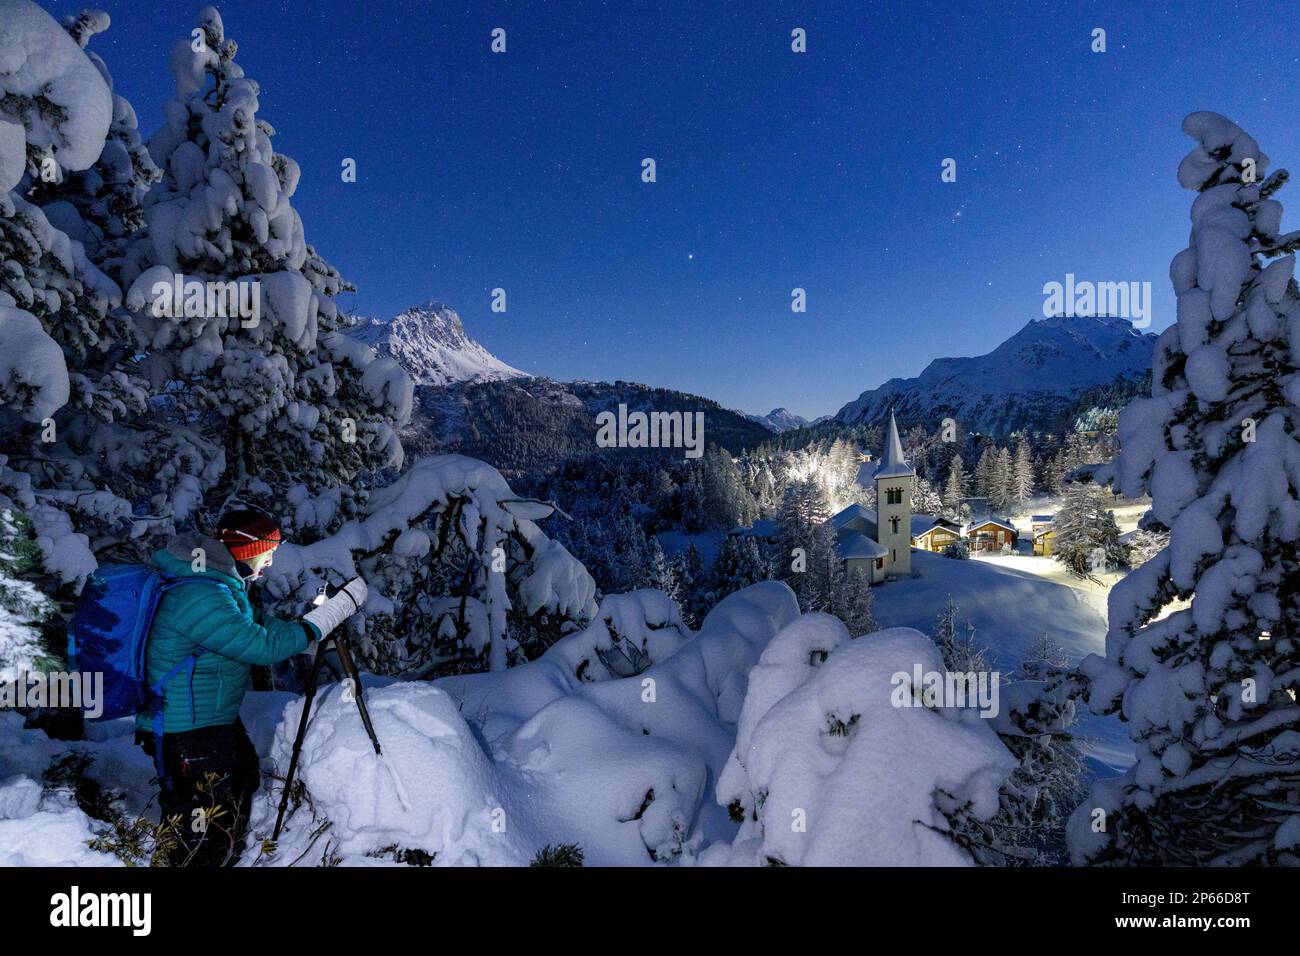 Un homme photographiant l'ancienne Chiesa Bianca de nuit debout dans une forêt enneigée, Maloja, Engadine, canton de Graubunden, Suisse, Europe Banque D'Images